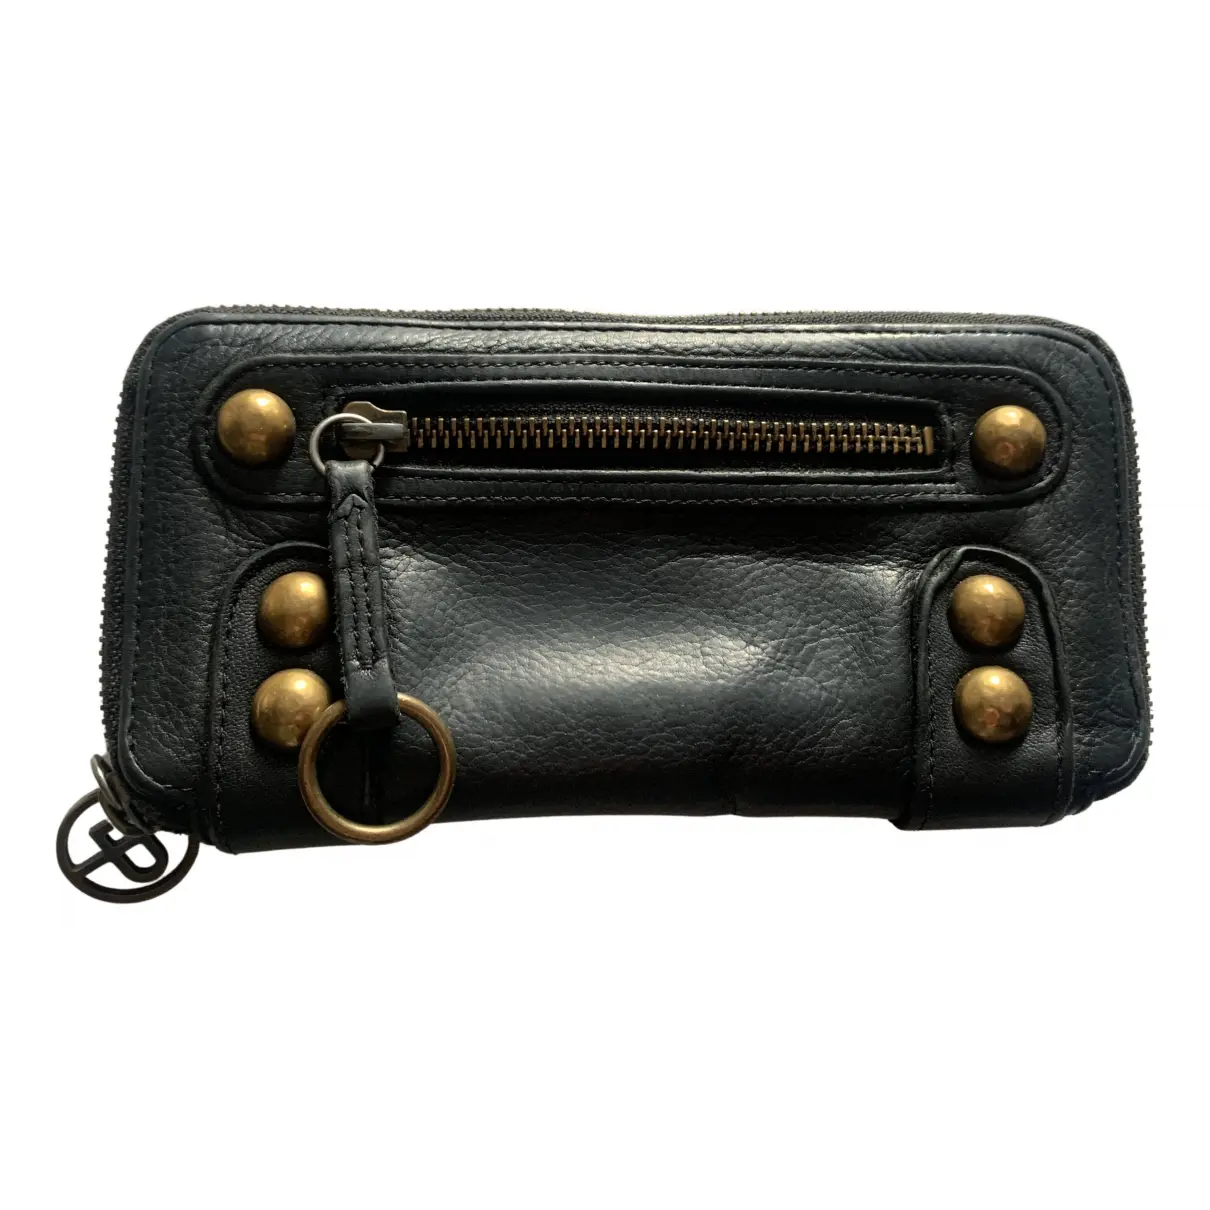 Leather wallet Linea Pelle